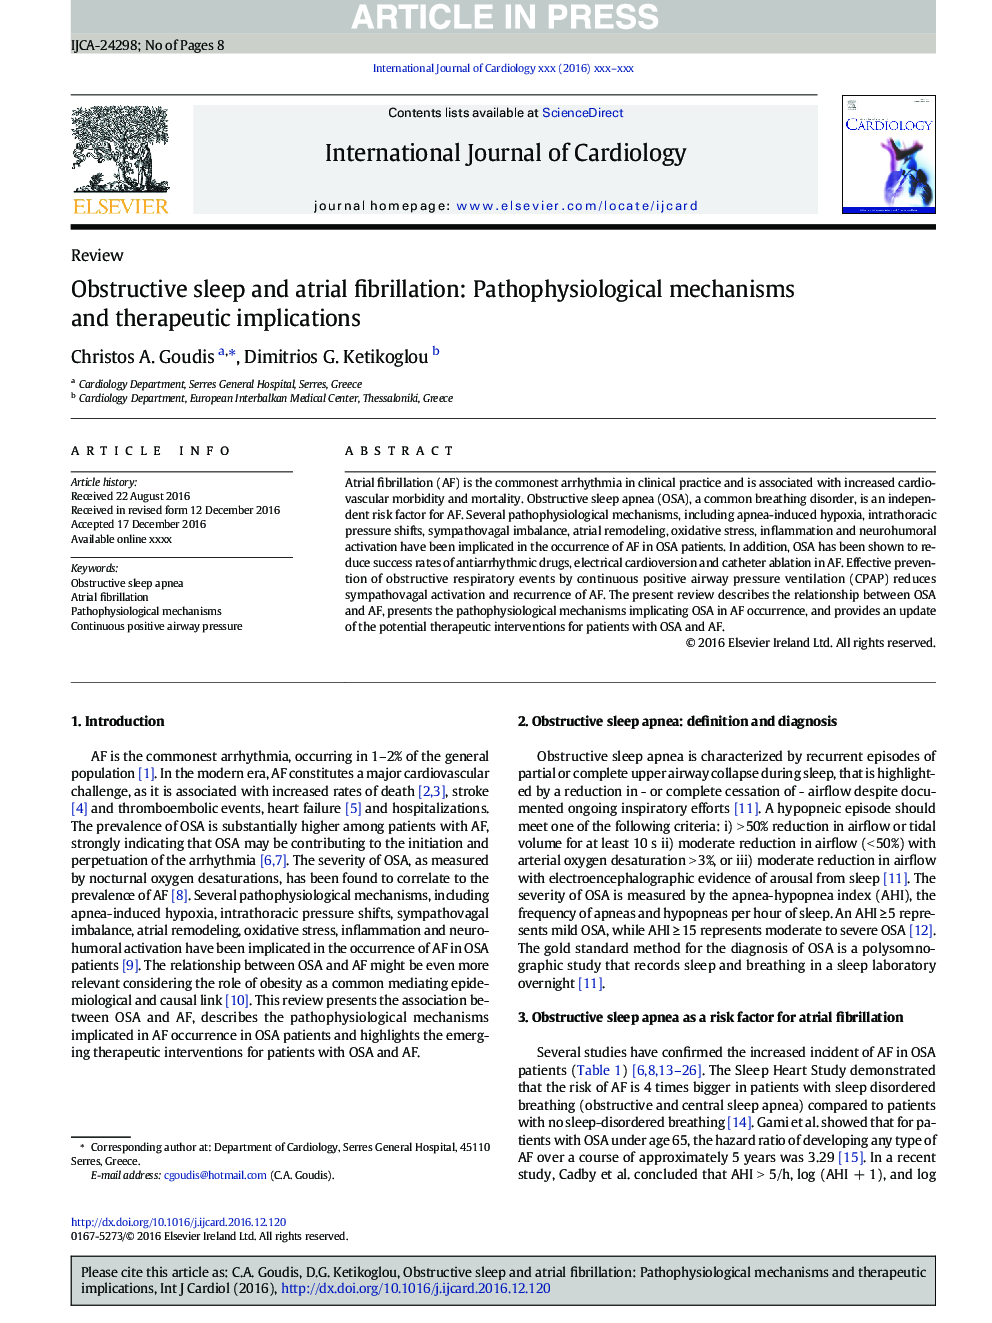 خواب انسدادی و فیبریلاسیون دهلیزی: مکانیسم های پاتوفیزیولوژیک و پیامدهای درمانی 